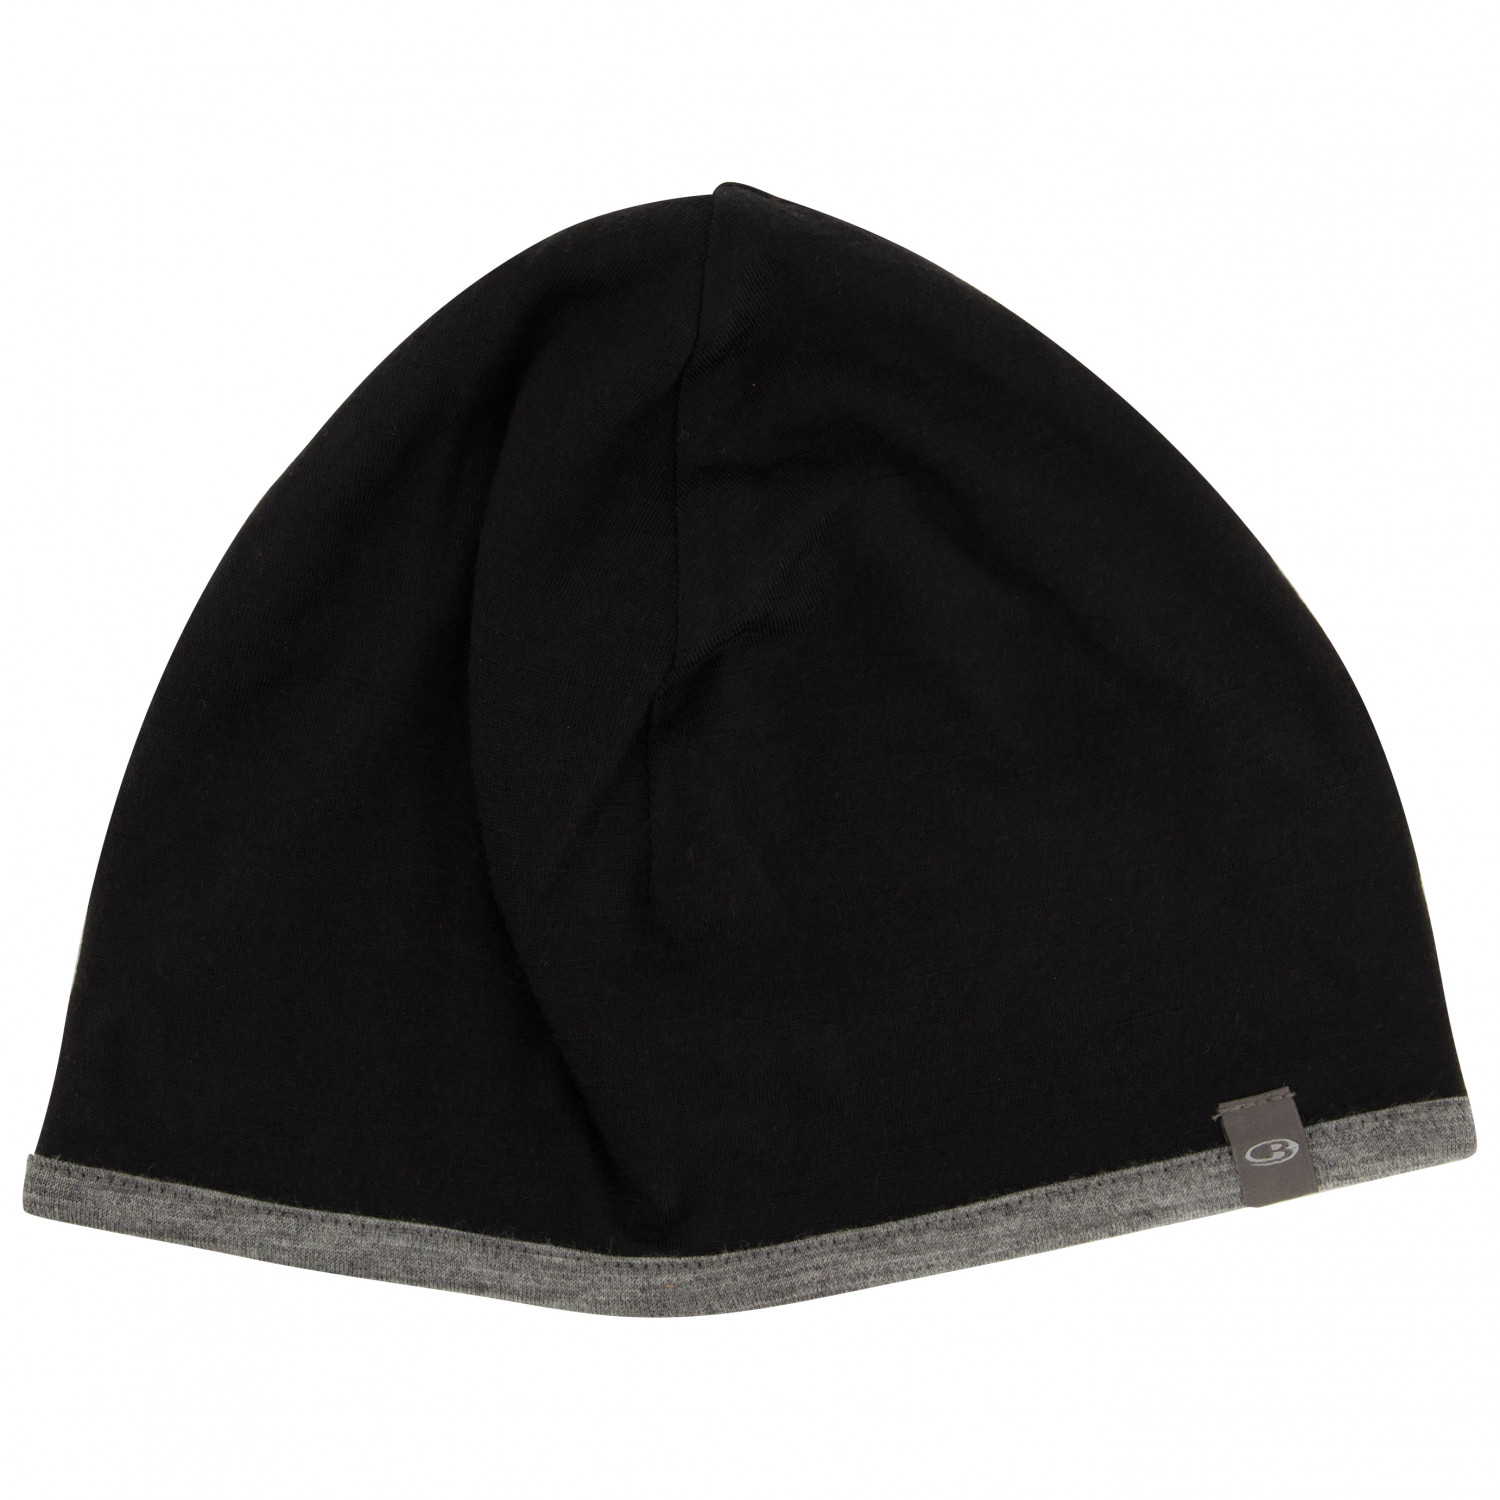 Кепка Icebreaker Pocket Hat, цвет Black/Gritstone Heather